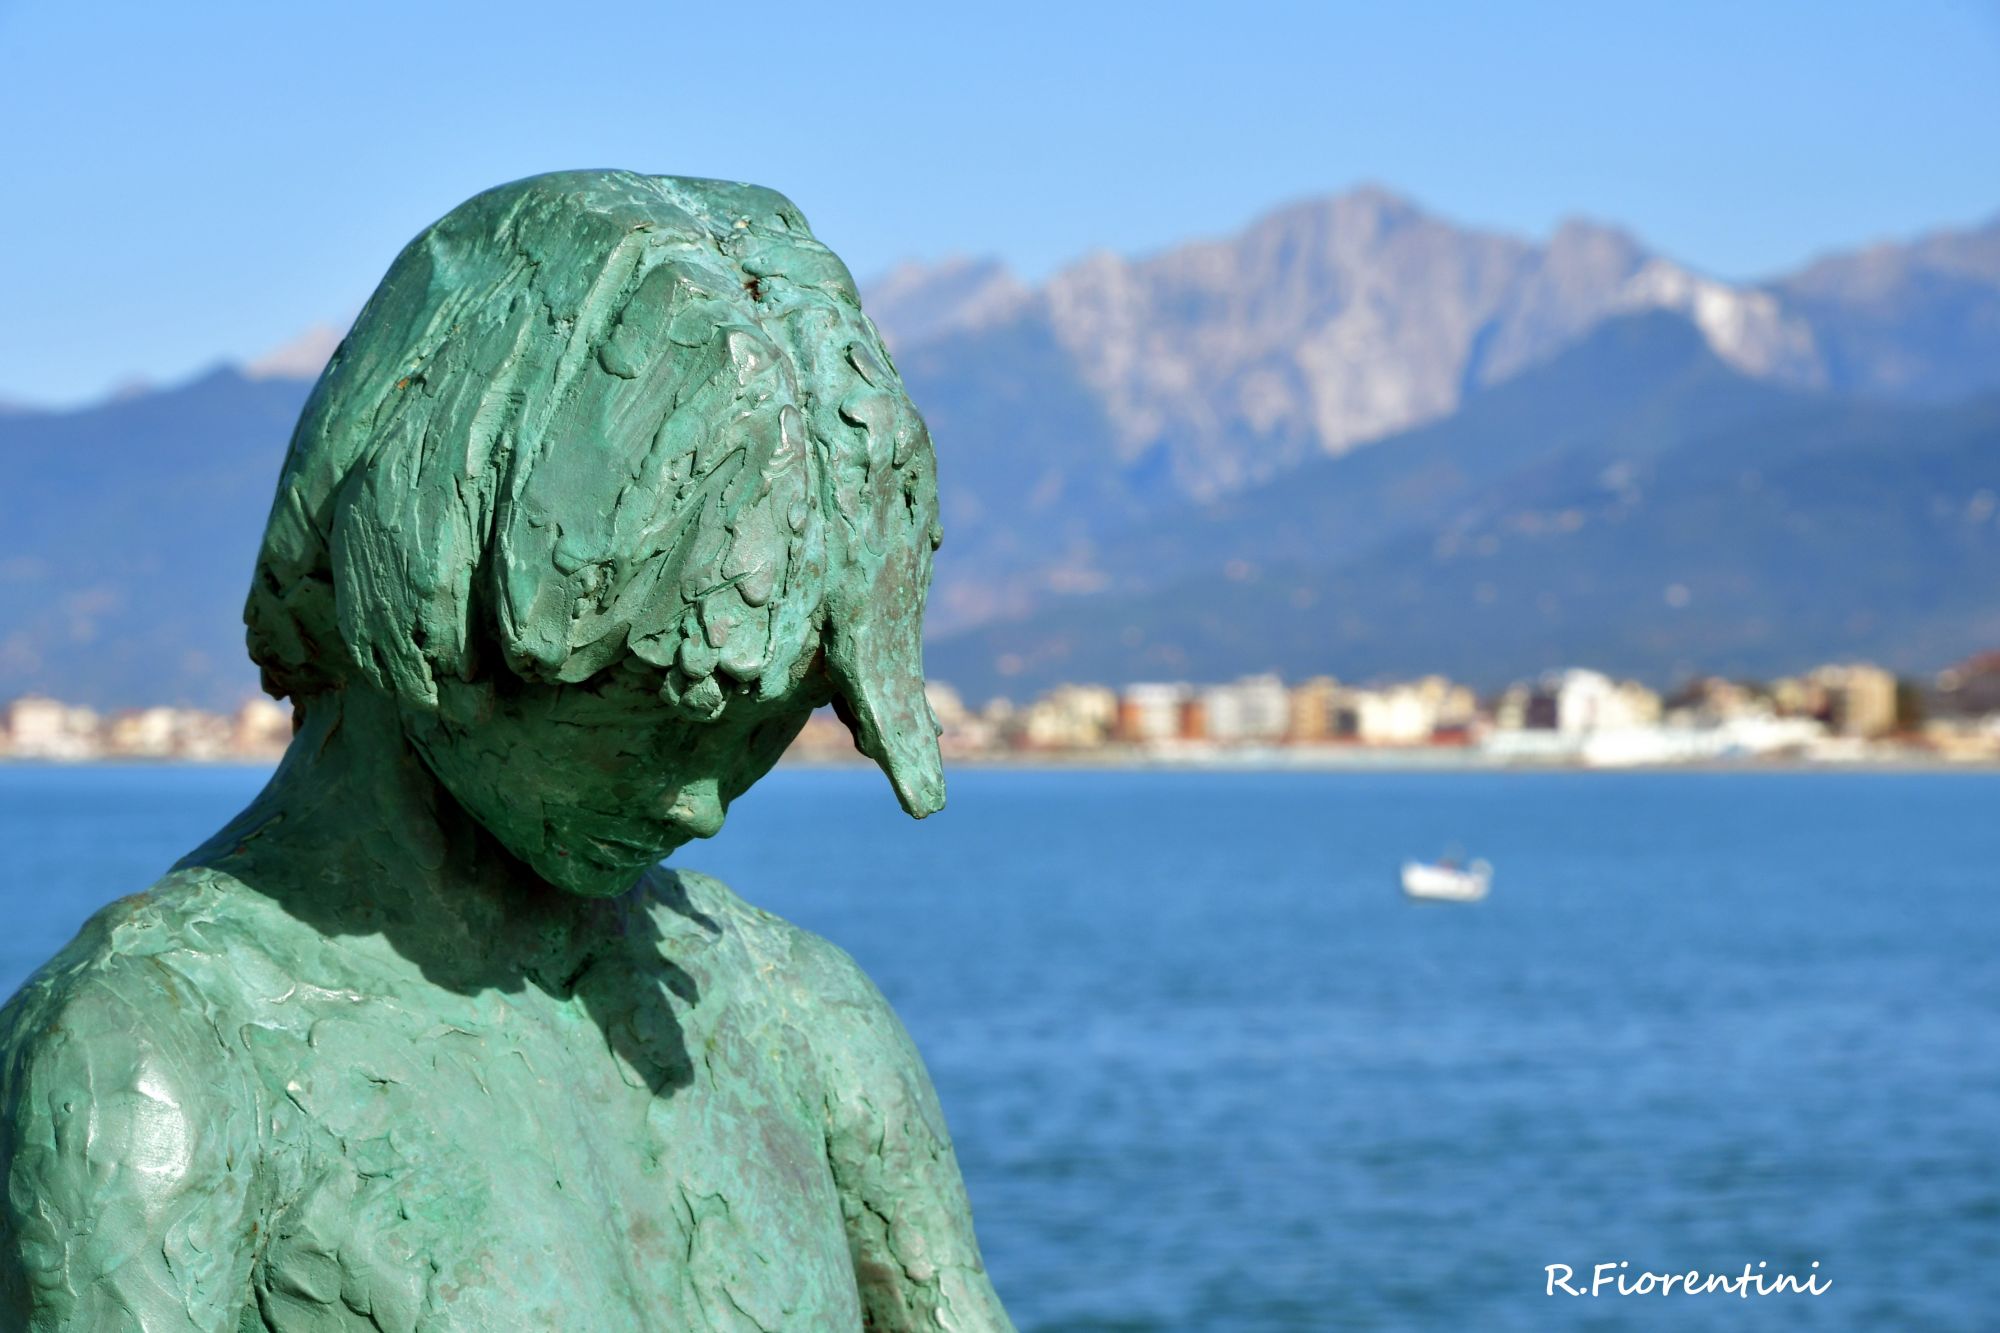 La statua sul mare